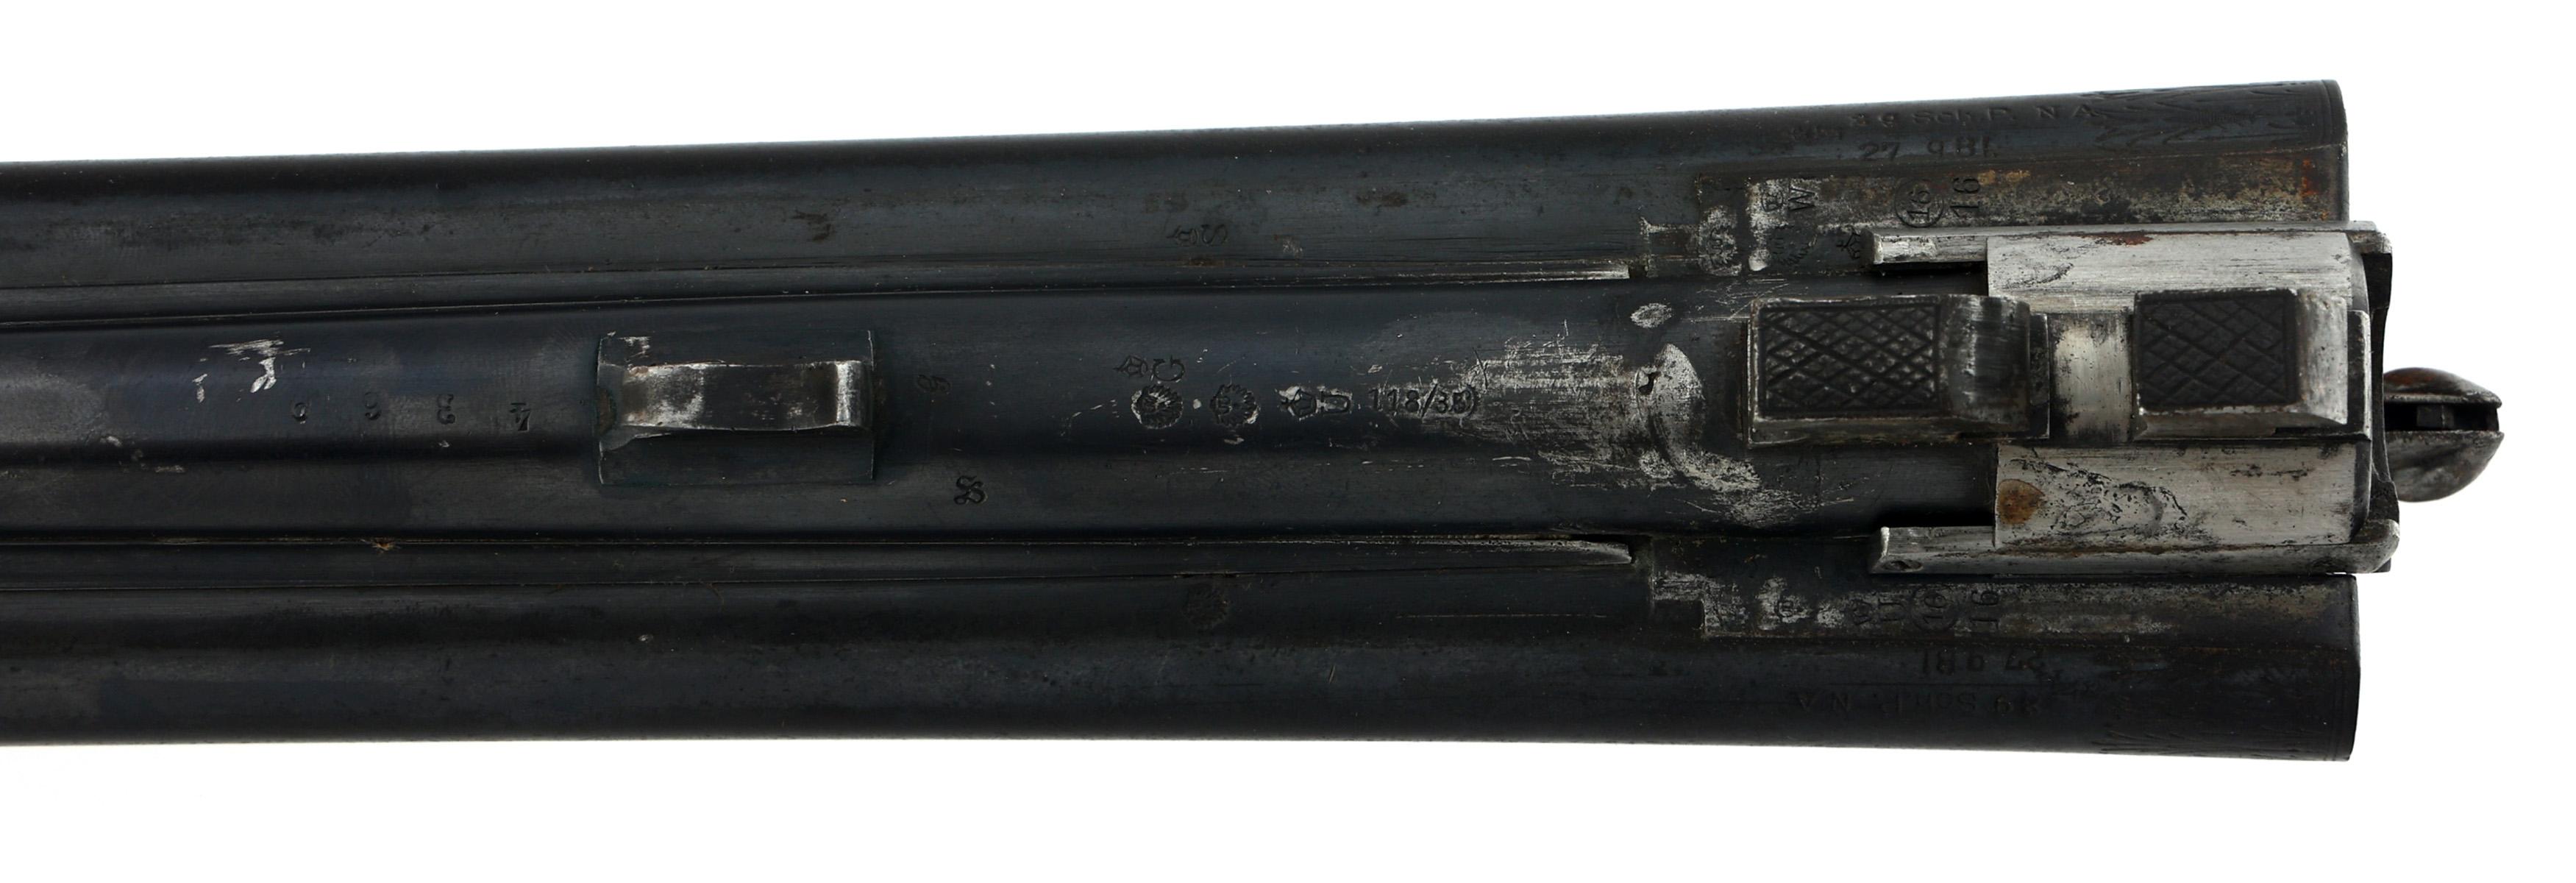 ADOLF STROVER 16 GA / 9.3mm CALIBER DRILLING RIFLE